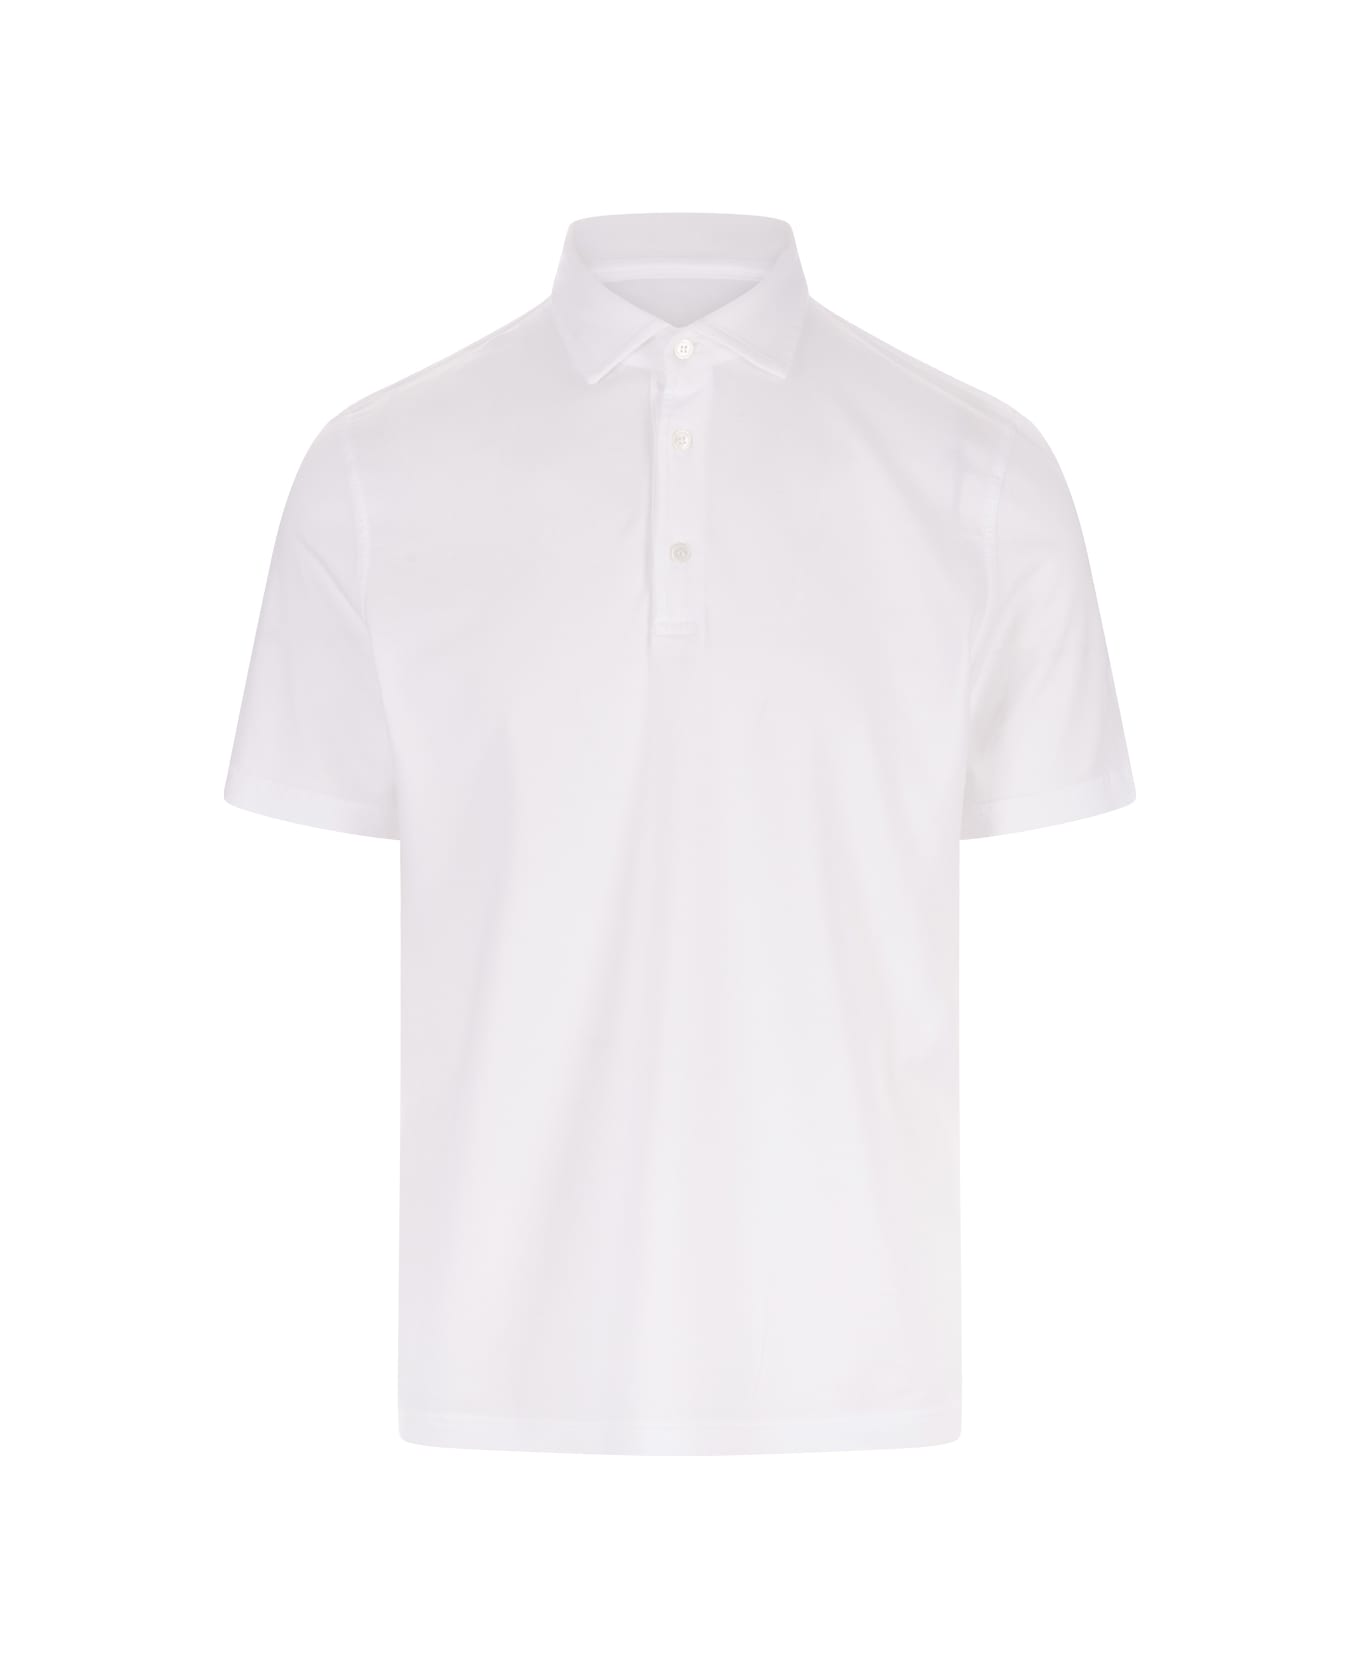 Fedeli White Polo Shirt In Organic Cotton - White